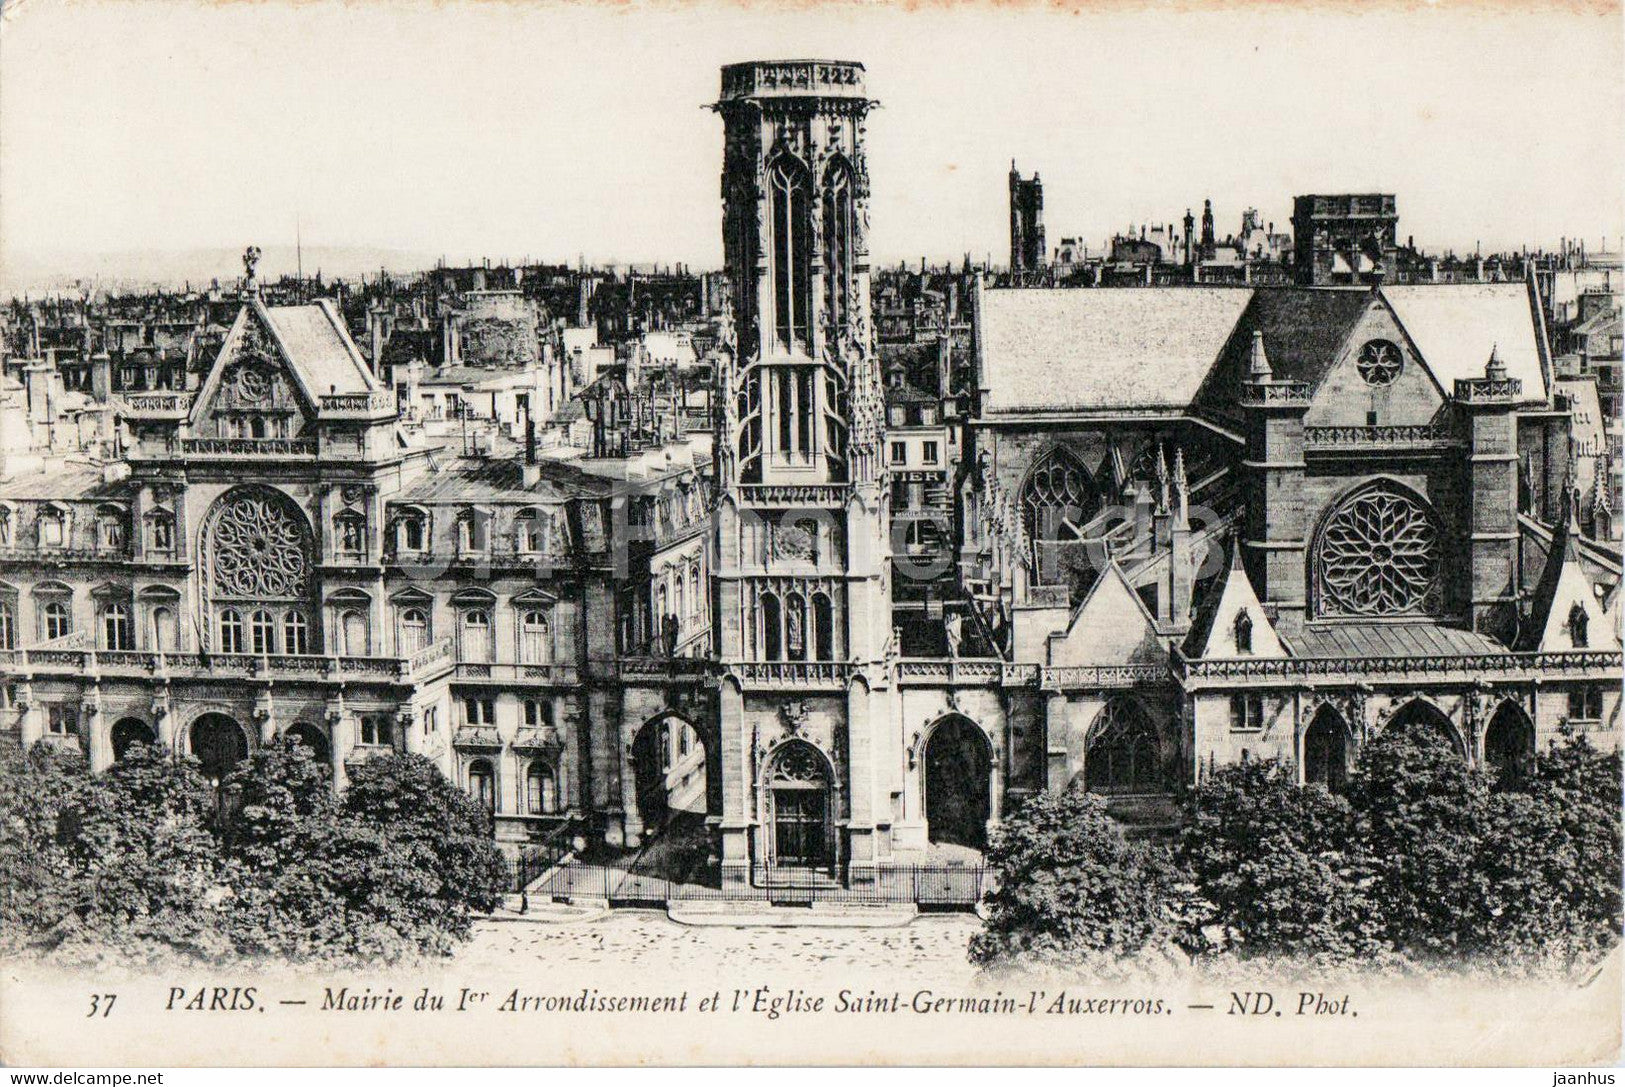 Paris - Mairie du 1er Arrondissement et l'Eglise Saint Germain l'Auxerrois - church 37 - old postcard - France - unused - JH Postcards